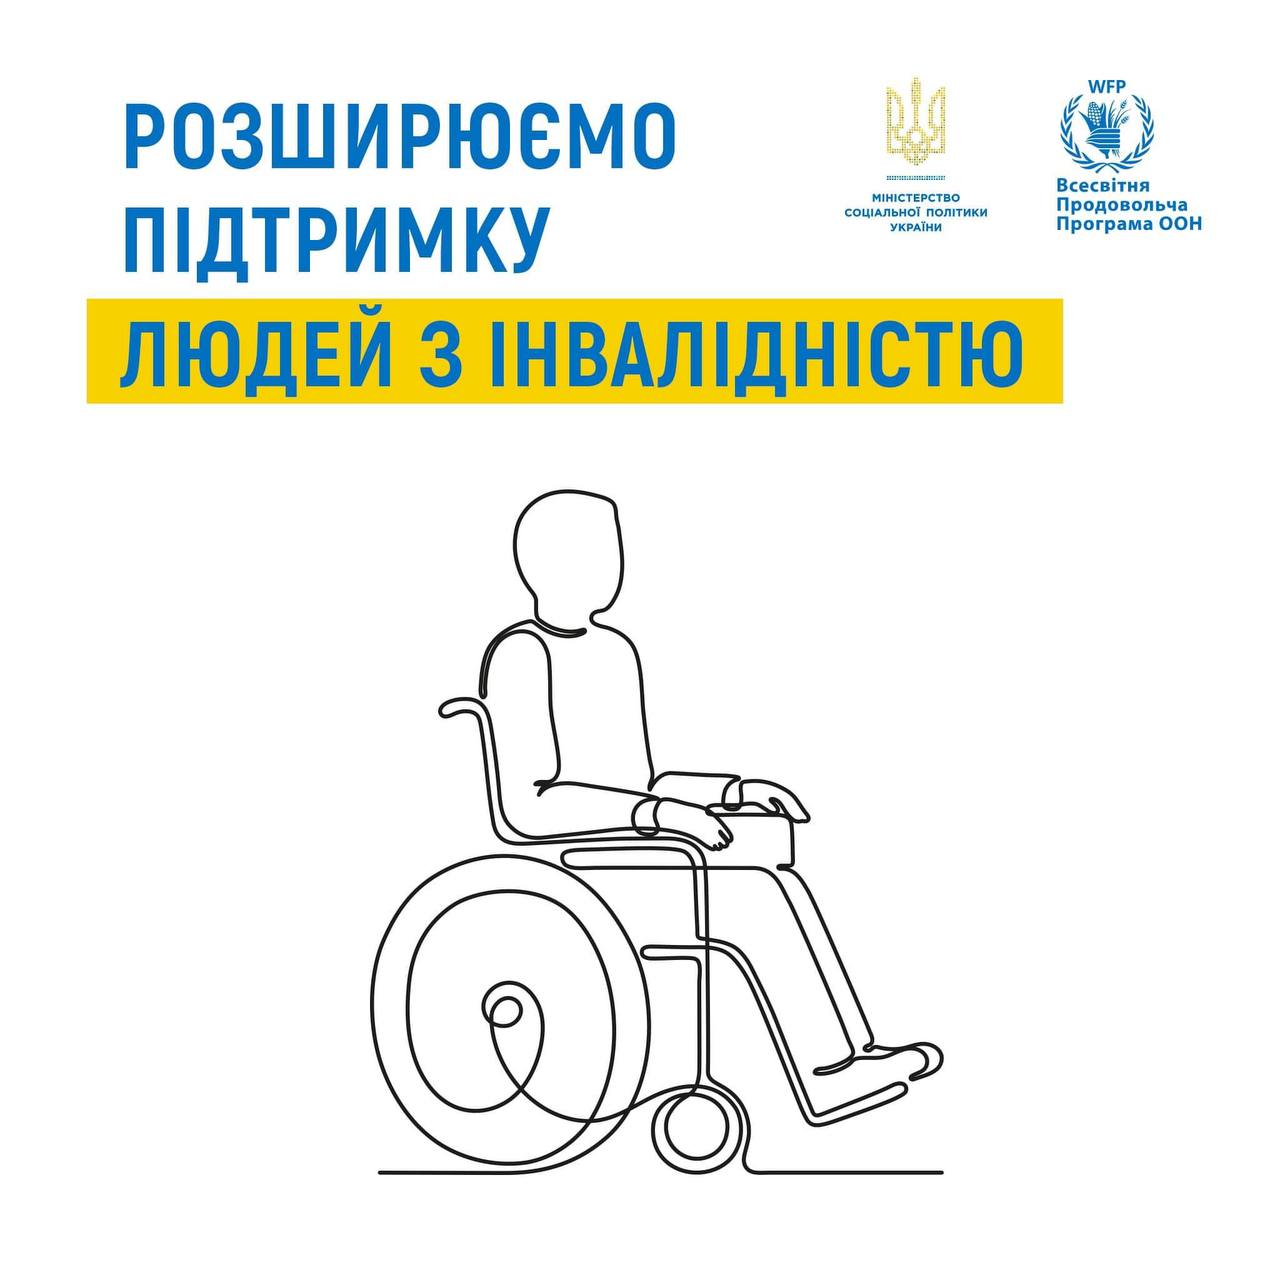 Люди з інвалідністю з дитинства та діти з інвалідністю можуть отримувати додаткові виплати від ВПП ООН